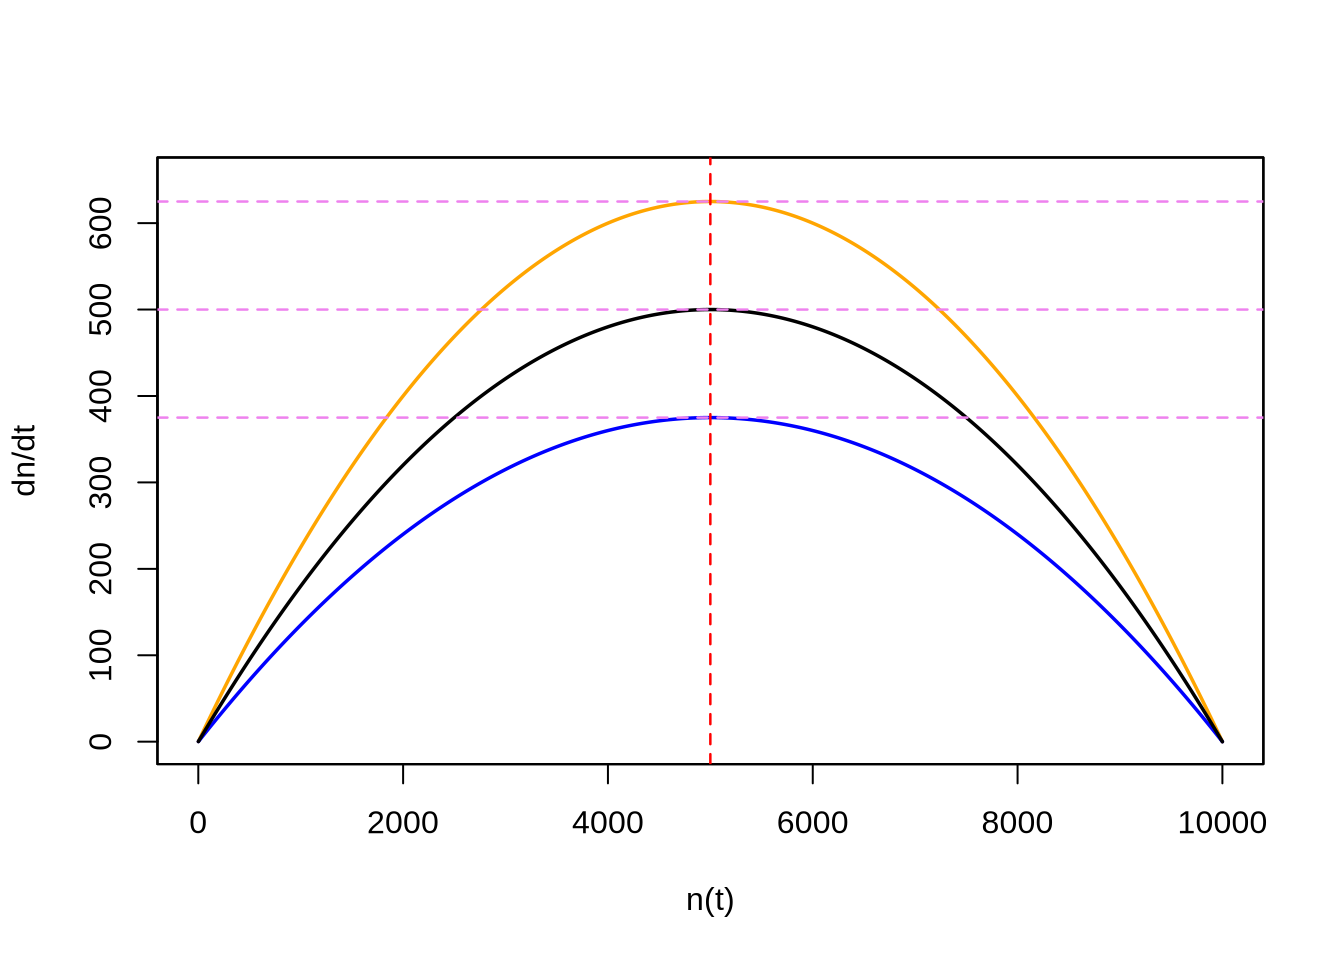 Tasas de crecimiento en función del tamaño de la población para las tres poblaciones de la Figura 7.4. Se observa claramente que se trata de una curva parabólica con un máximo en el centro. En violeta los valores máximos, que coinciden con las respectivas pendientes en el punto de inflexión en la Figura 7.4.